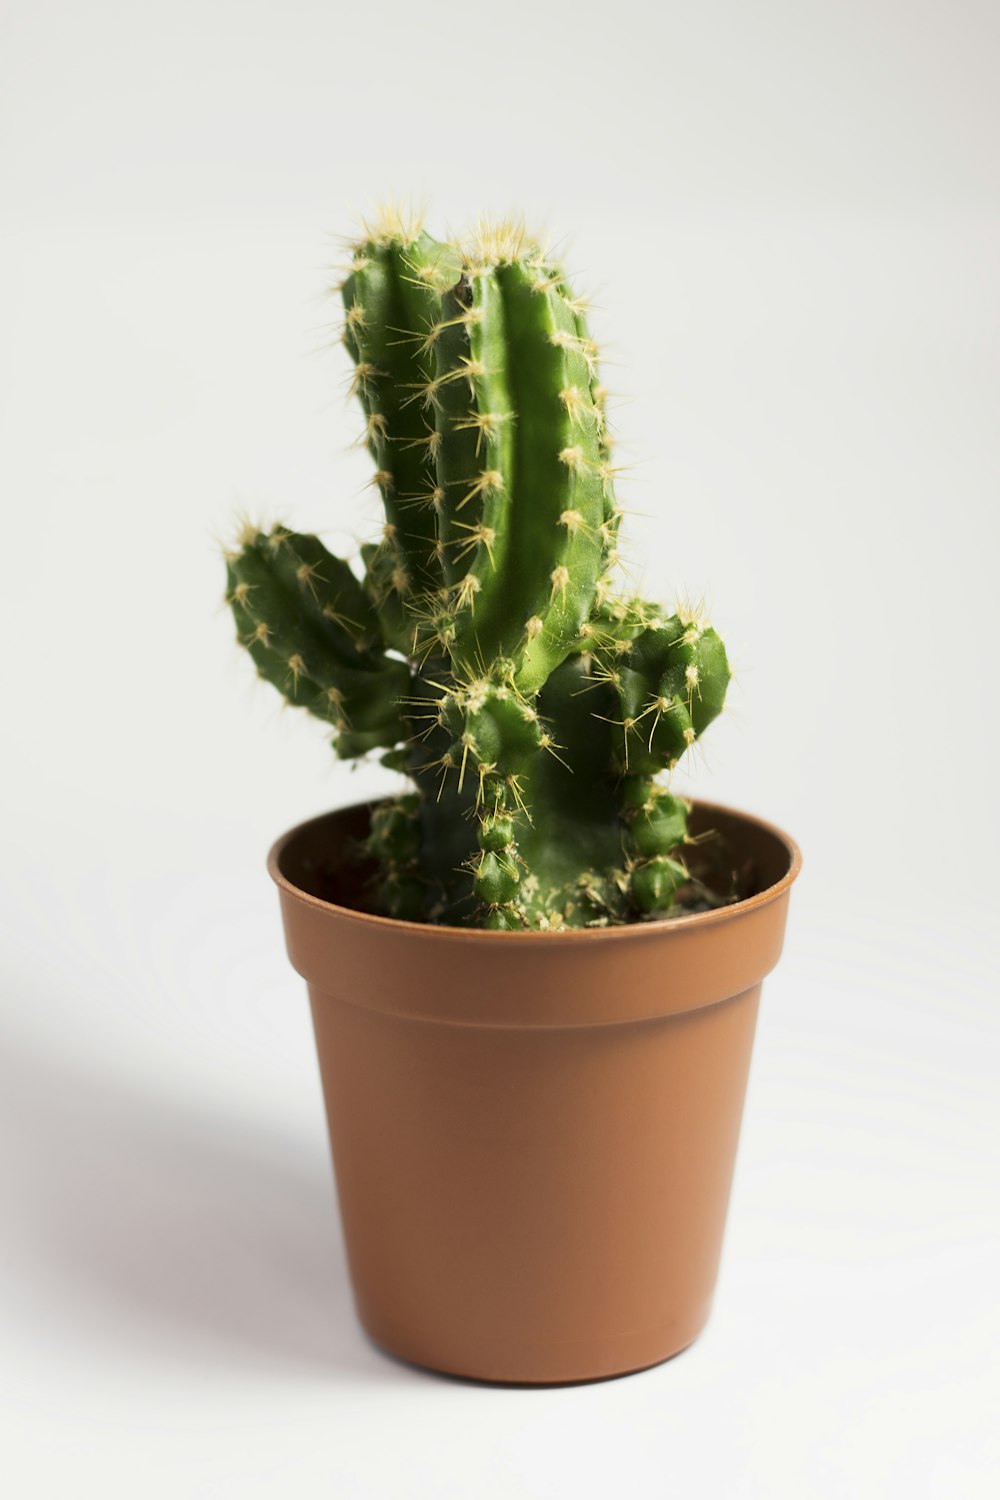 pianta di cactus verdi in vaso